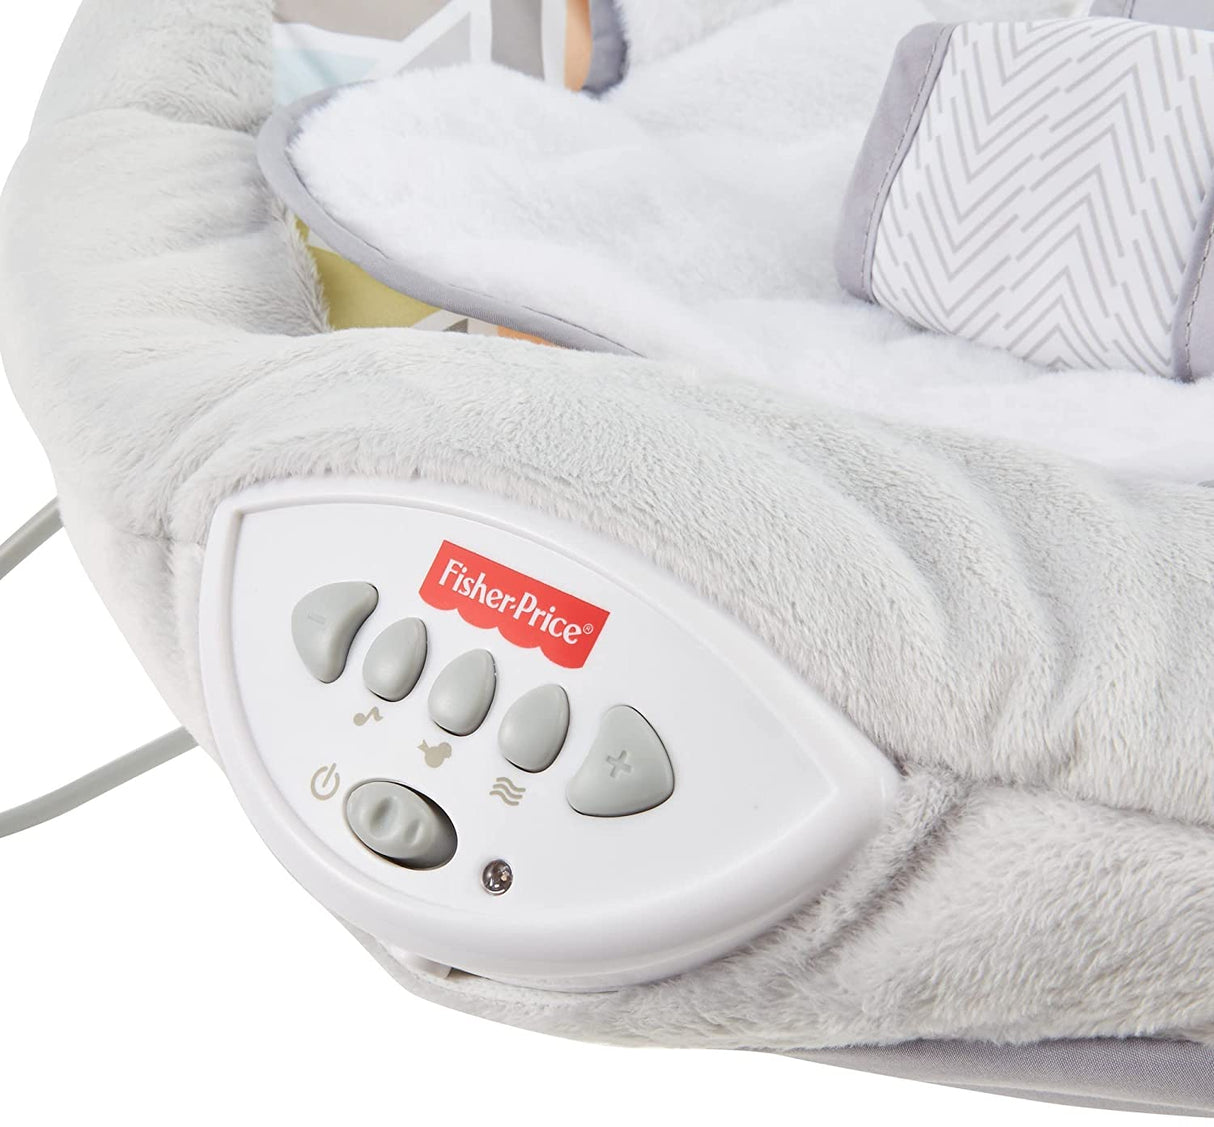 Mecedora de lujo Sweet Snugapuppy de Fisher-Price, asiento de bebé portátil con movimiento en el techo, música y vibraciones relajantes - DIGVICE MX